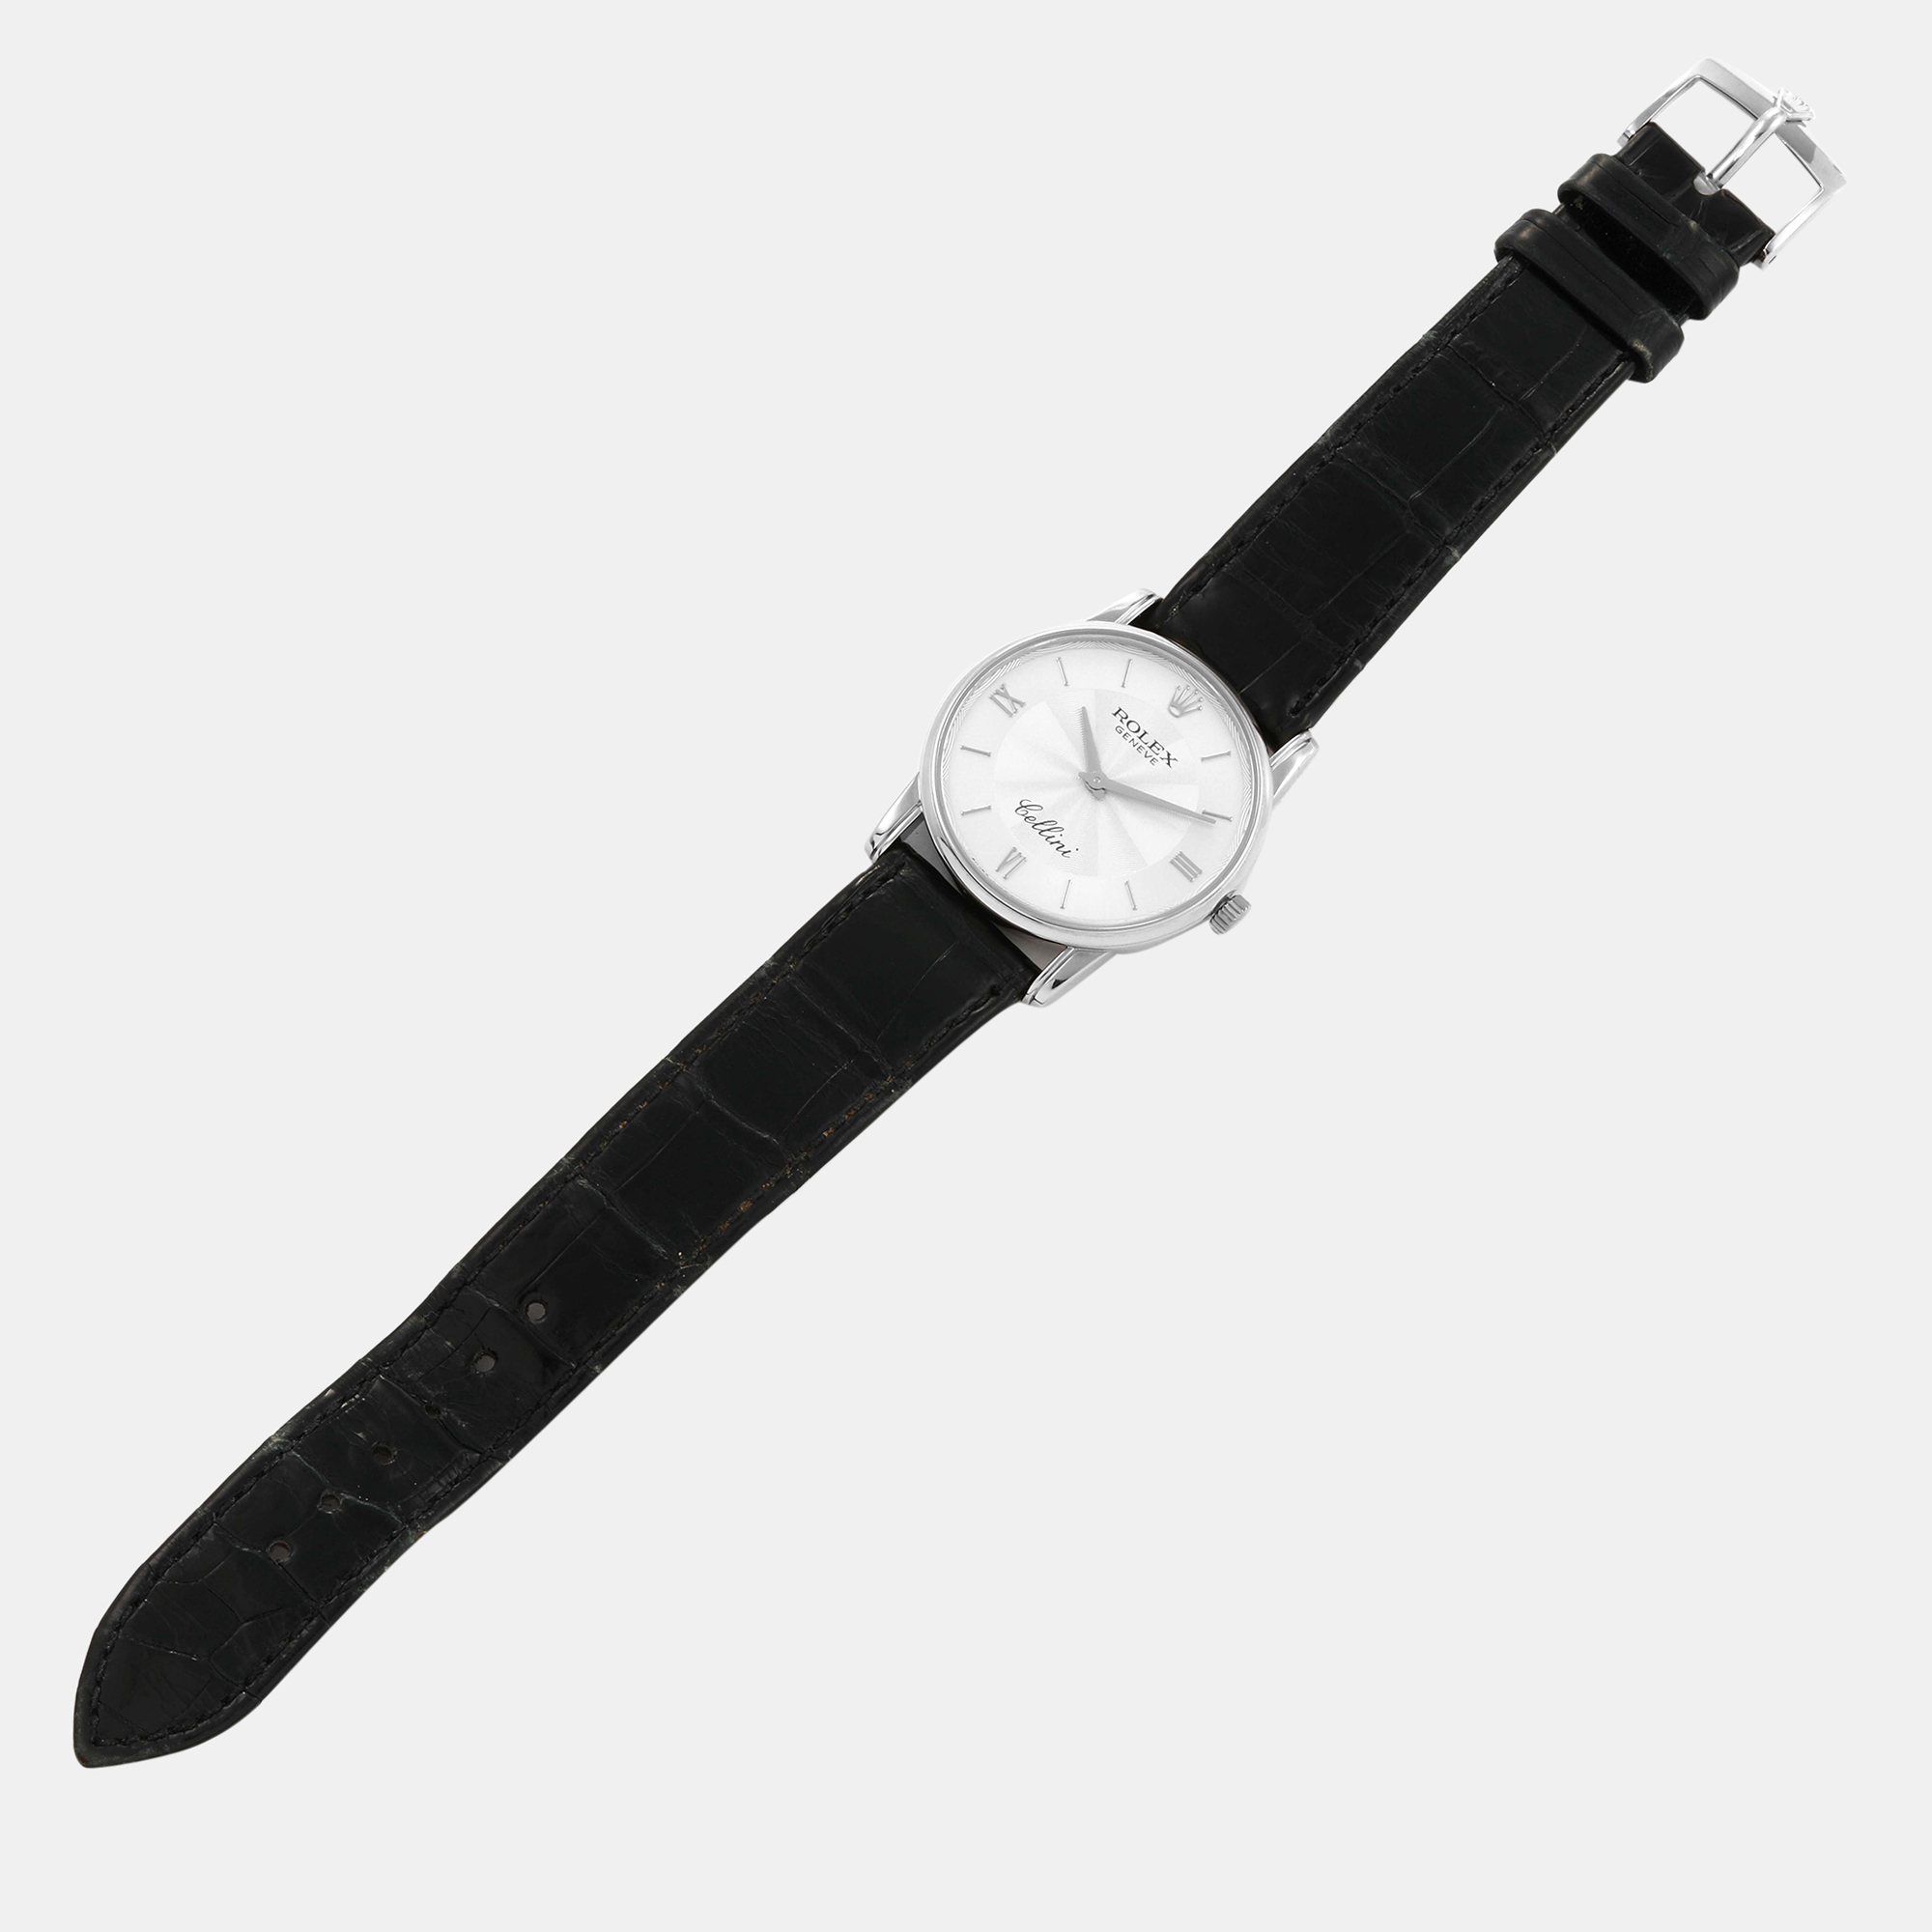 Rolex Cellini Classic White Gold Silver Guilloche Dial Men's Watch 5116 31.8 X 5.5 Mm